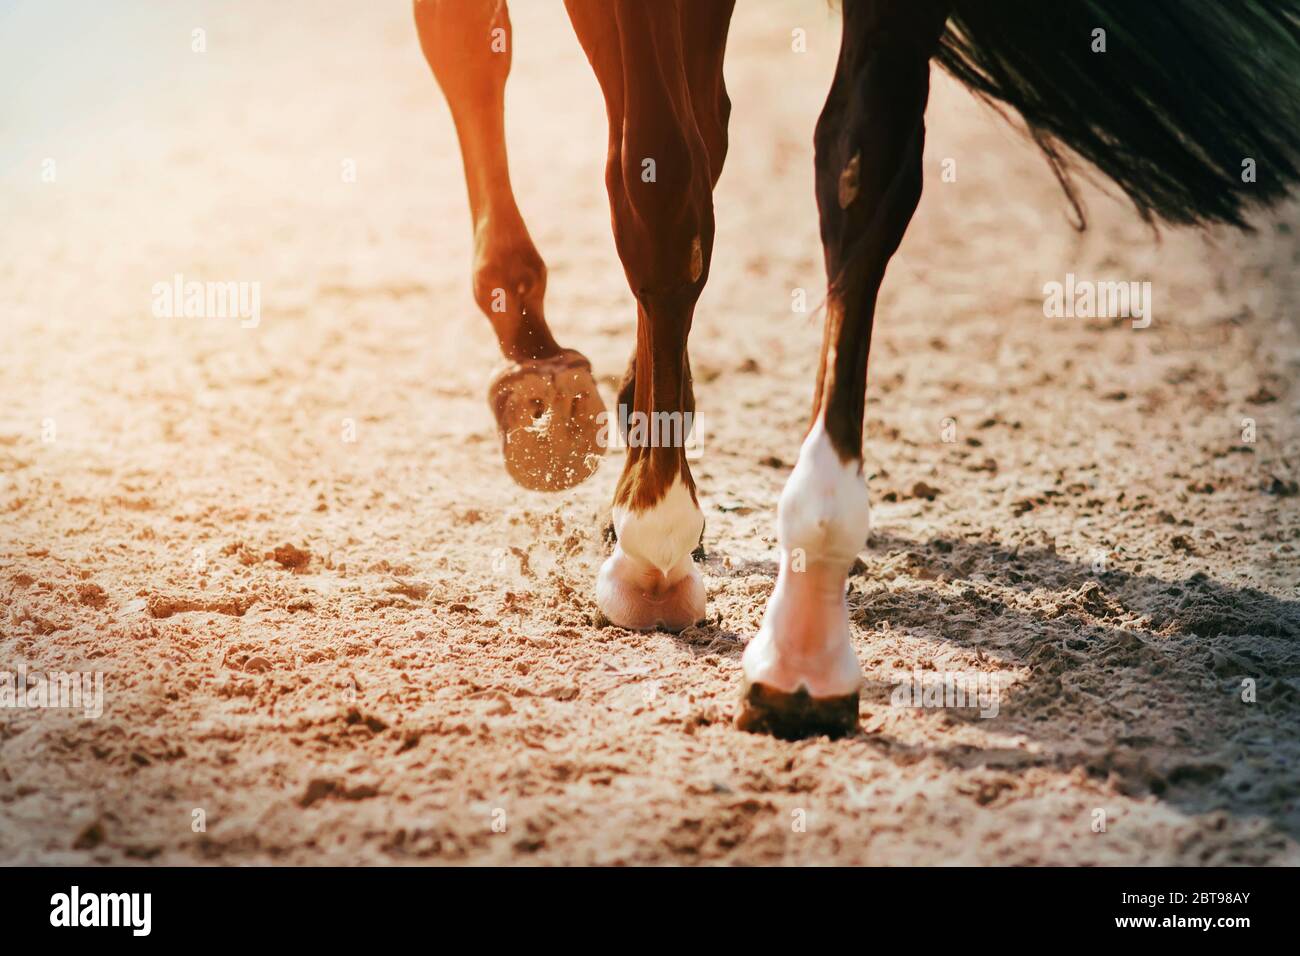 Die Füße eines schwarzen Rennpferdes galoppieren über eine sandige Arena, seine Hufe treten Sand und Staub in die Luft. Stockfoto